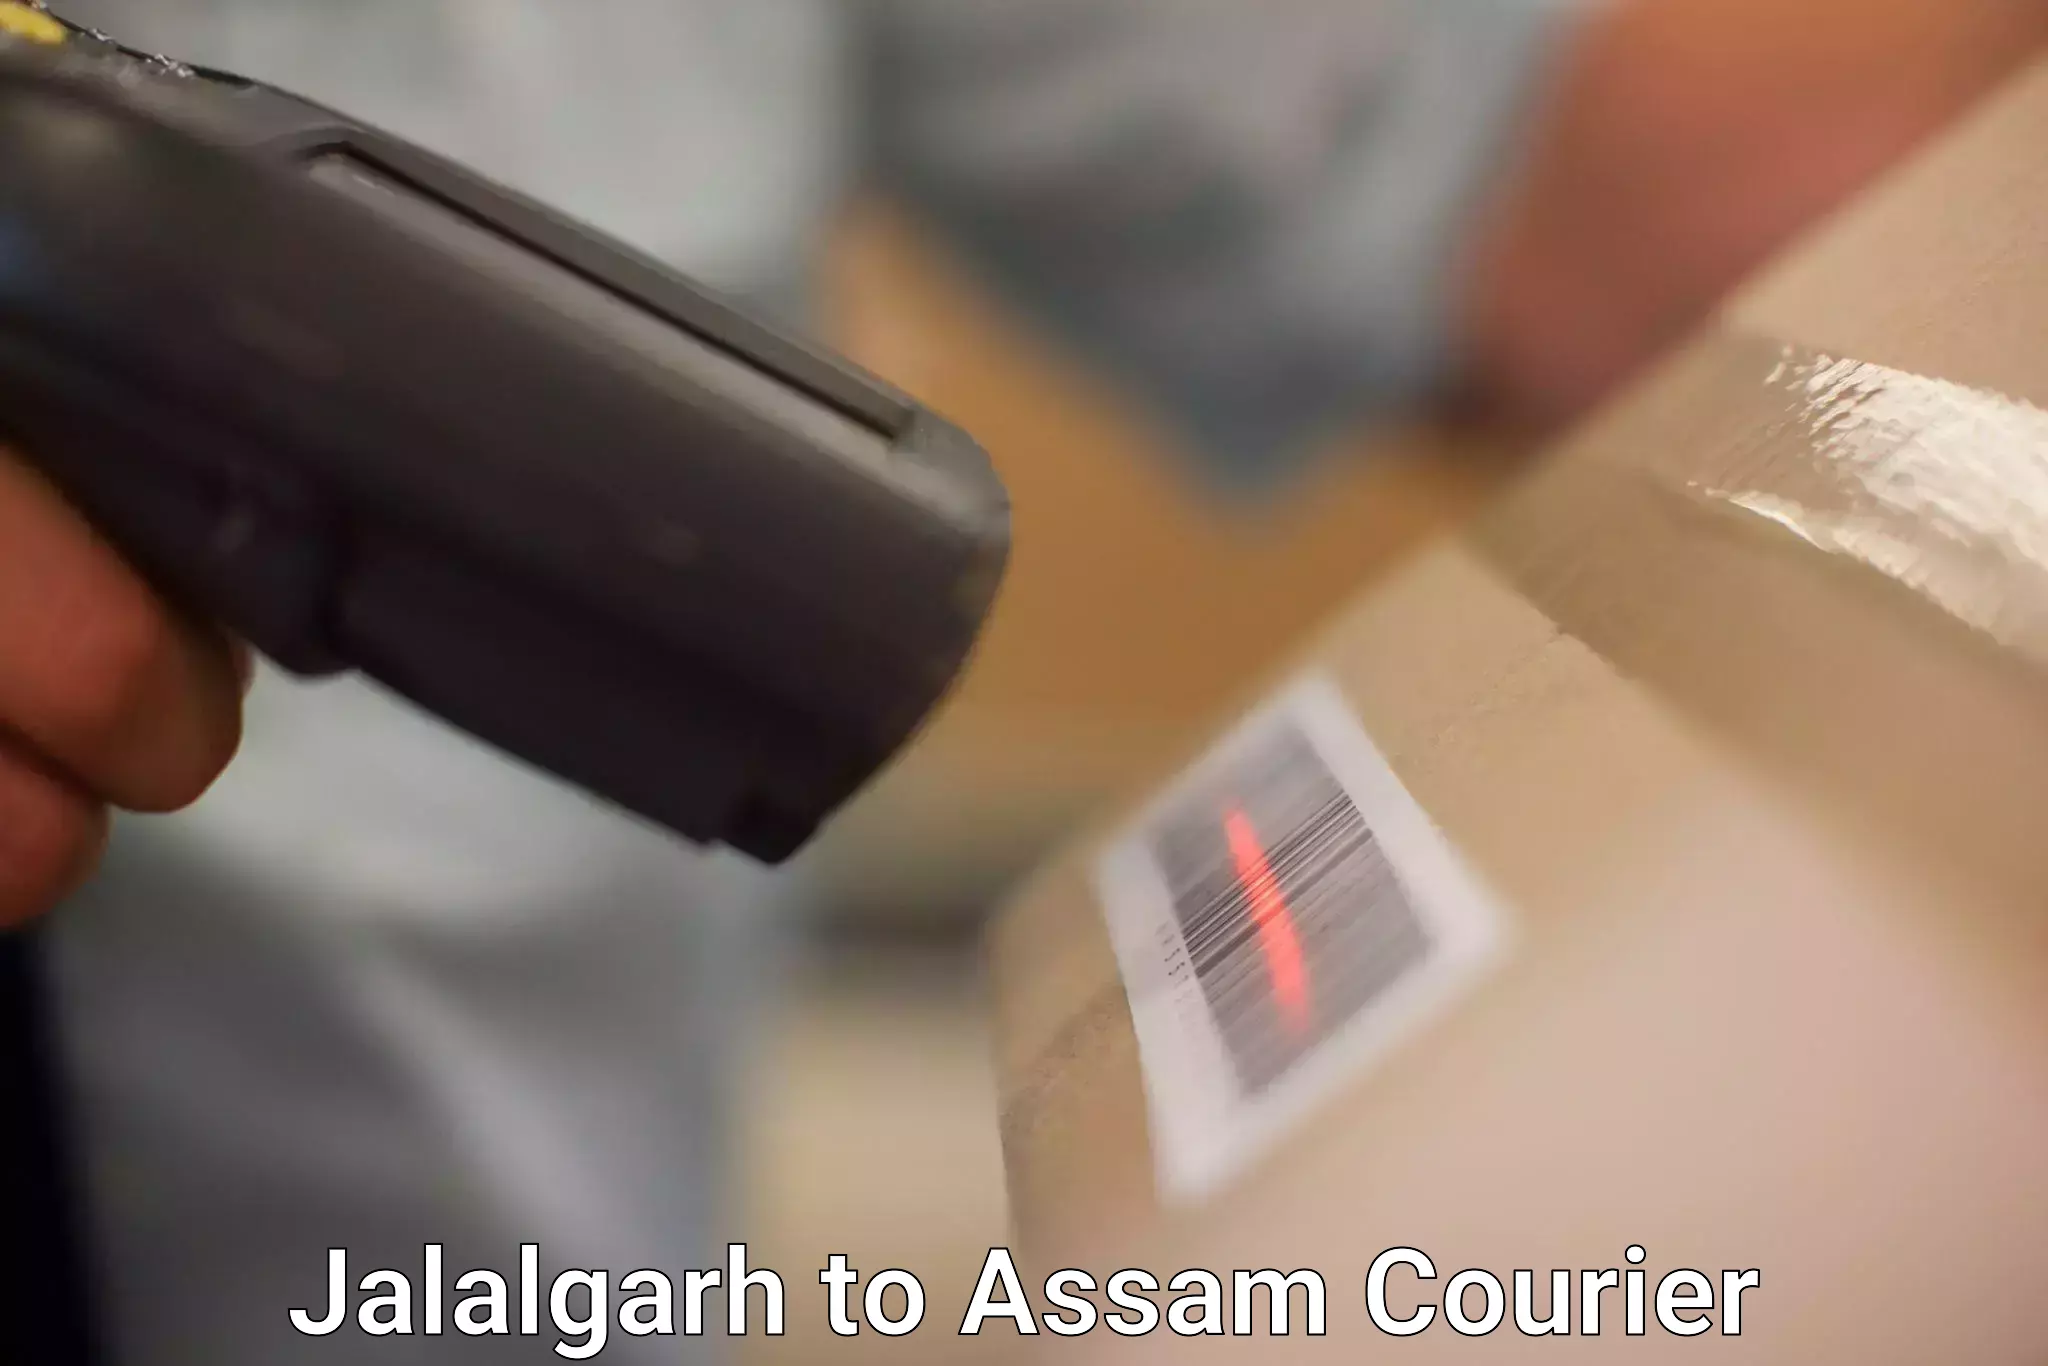 High-capacity parcel service Jalalgarh to Baihata